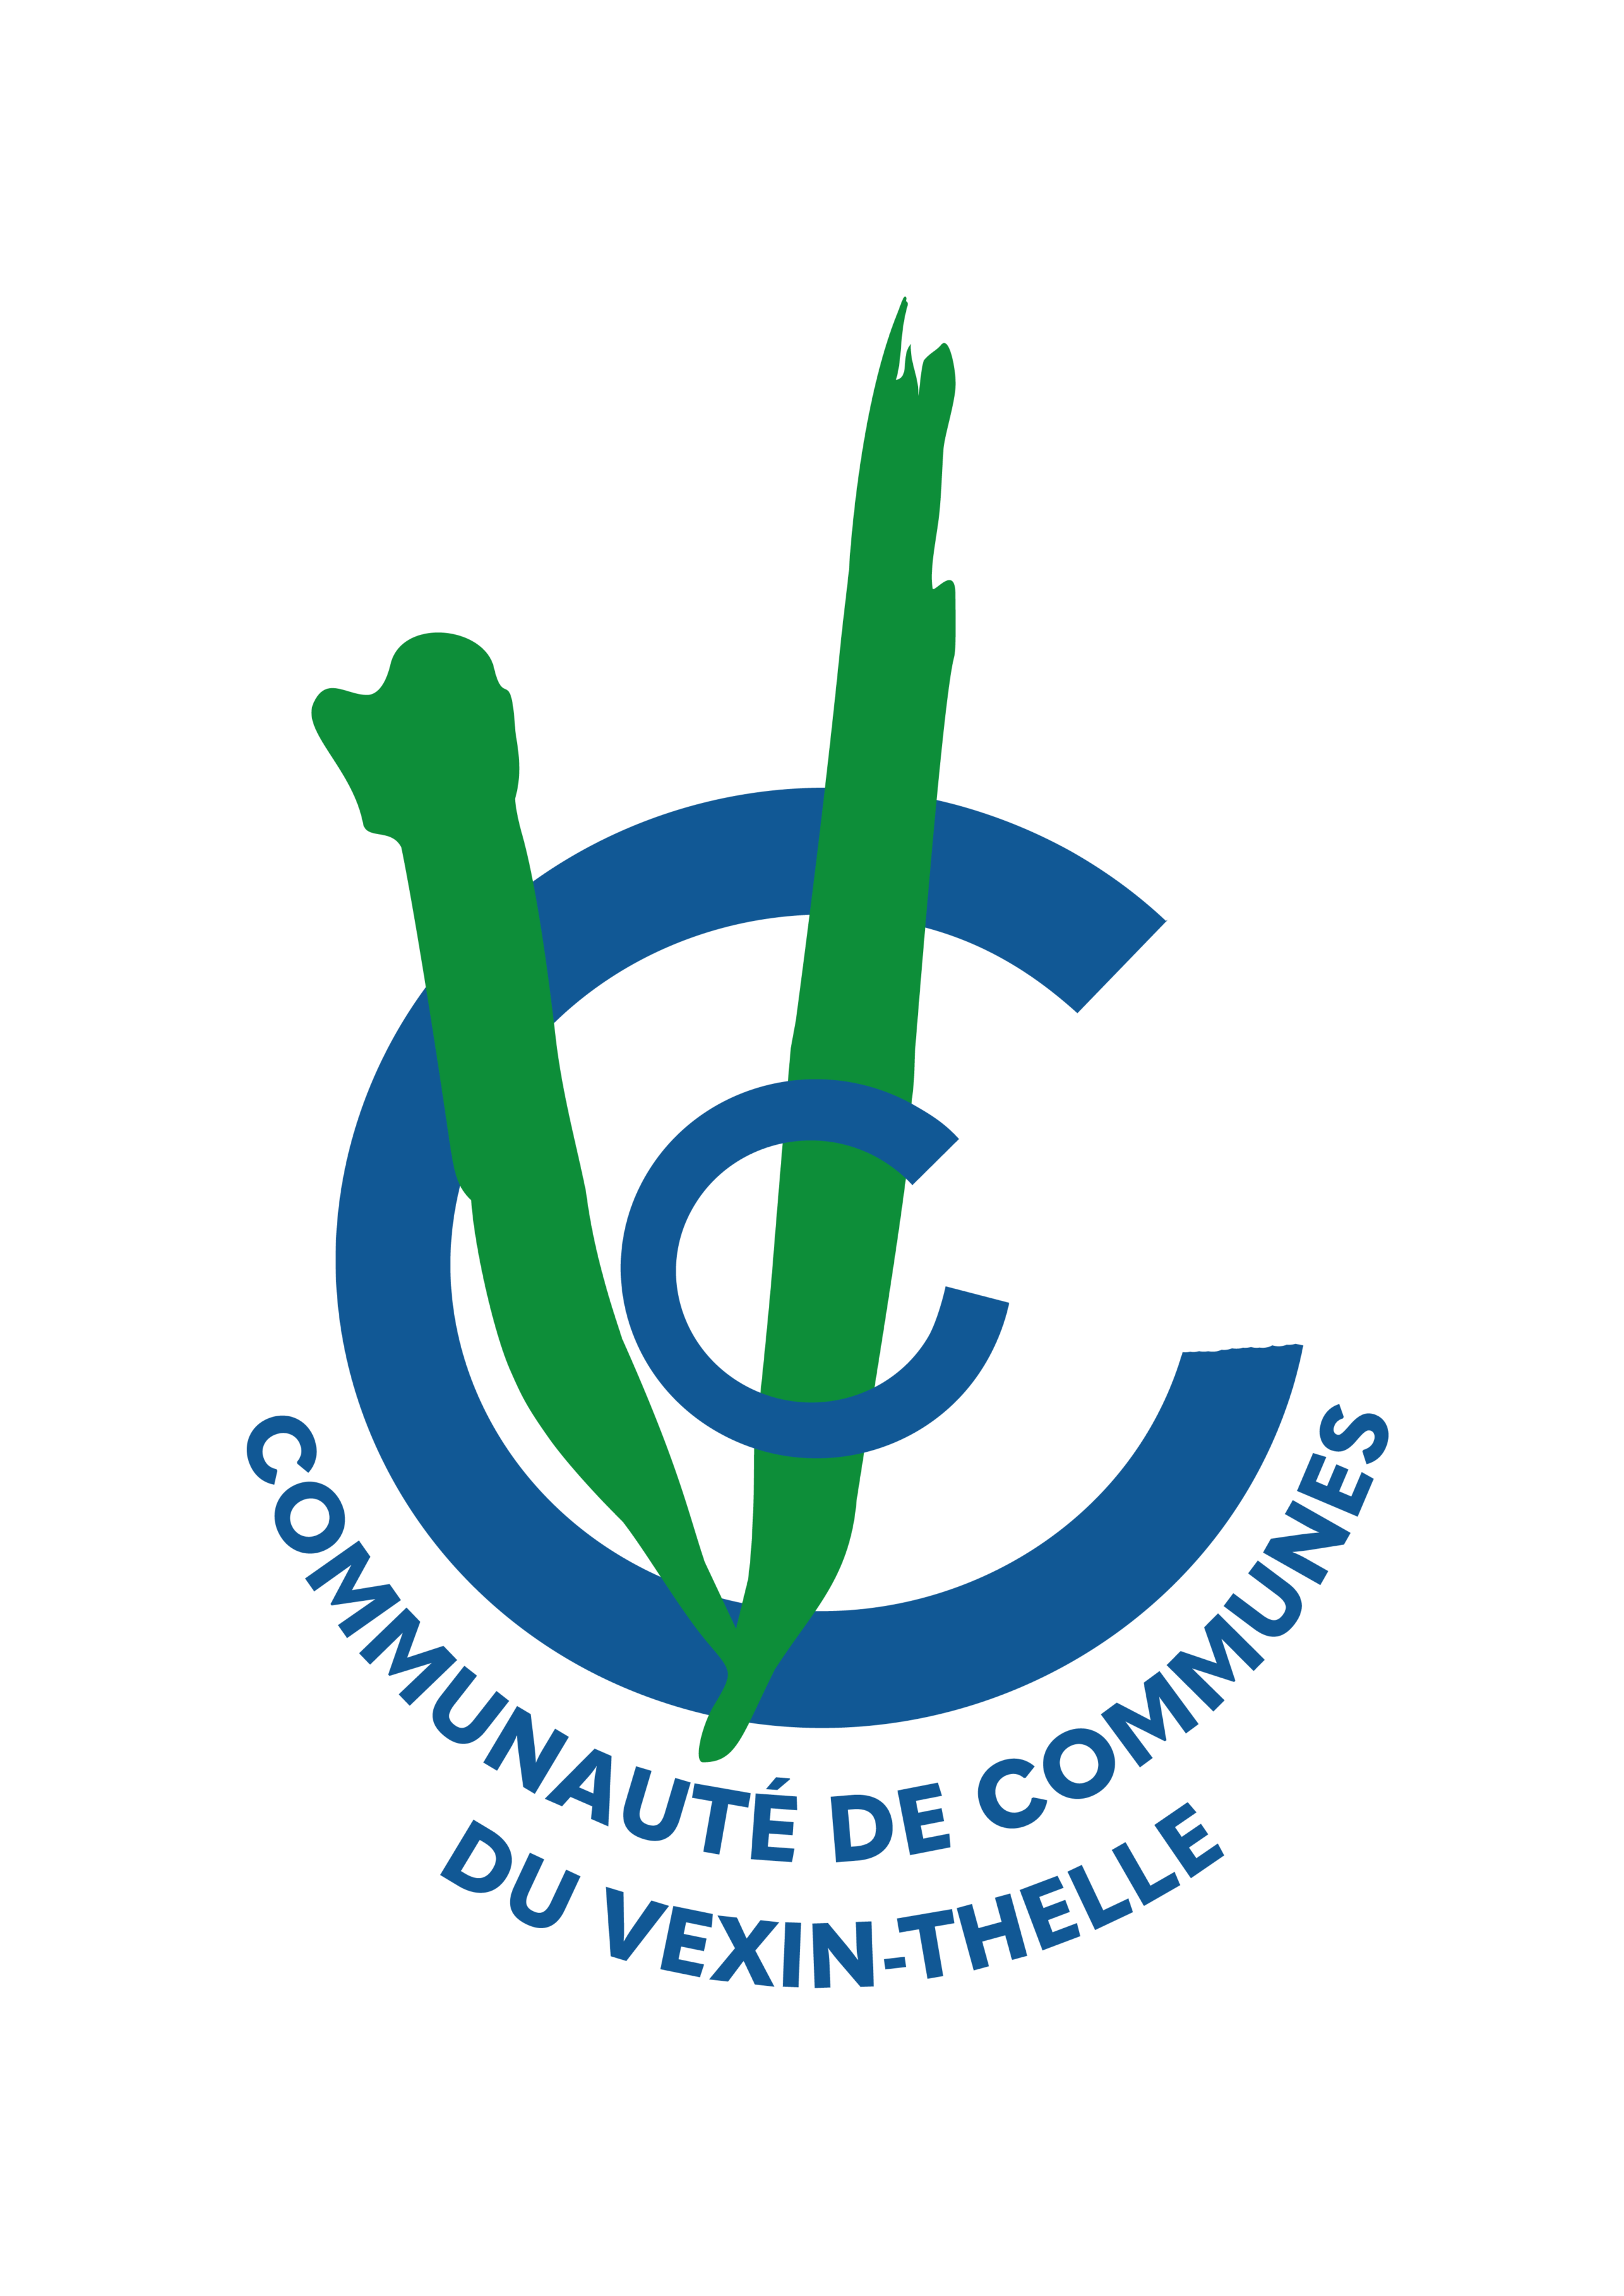 logo Communauté de Communes du Vexin-Thelle